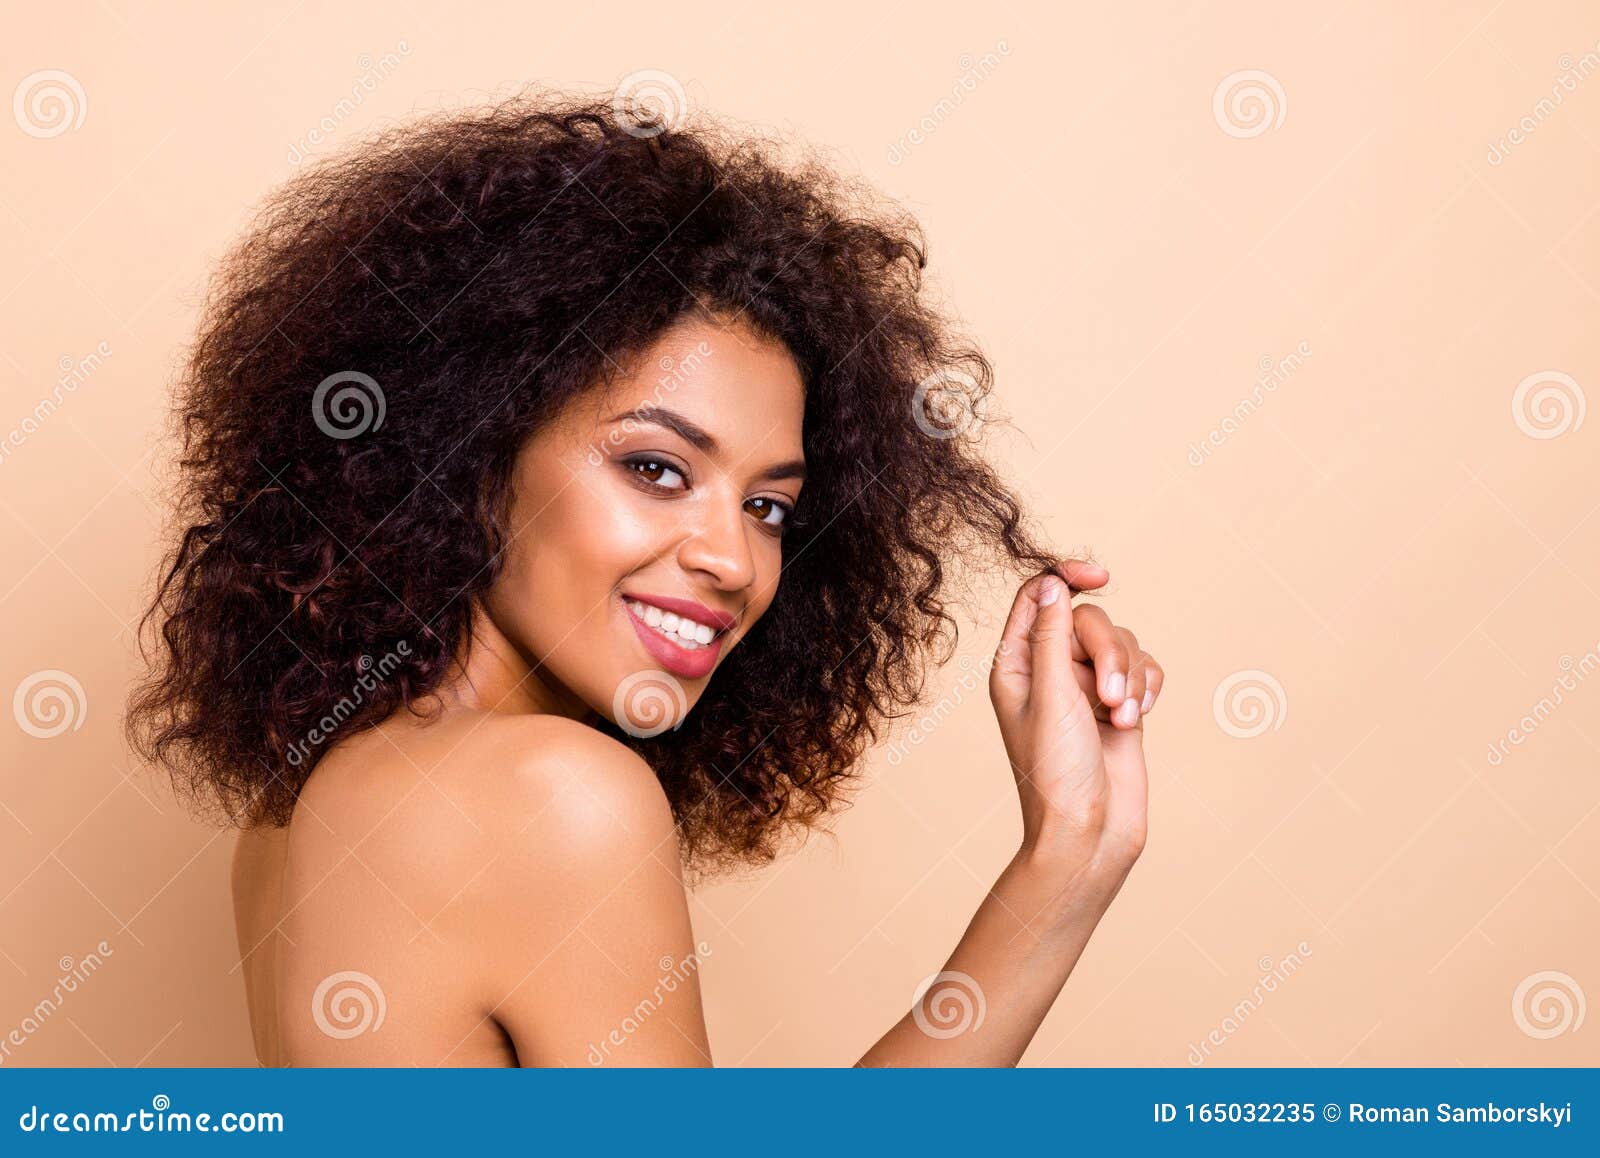 how to do 80s fluffy hair black girlTikTok Search